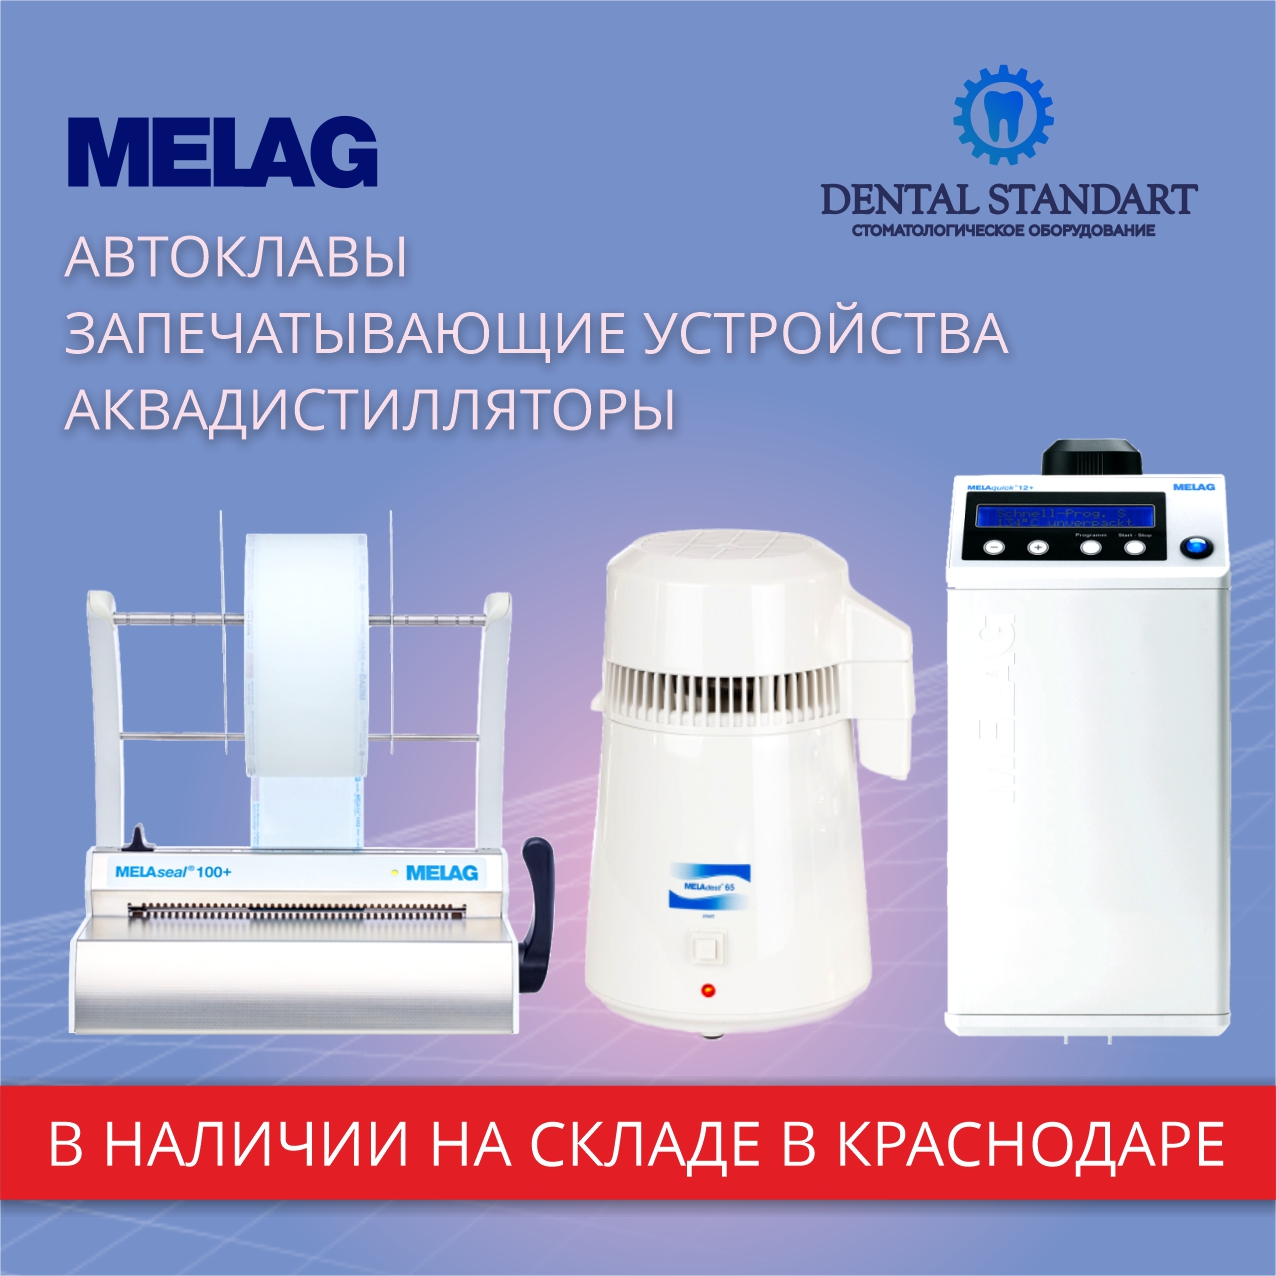 Оборудование Melag в наличии в магазине медицинского оборудования в Краснодаре.